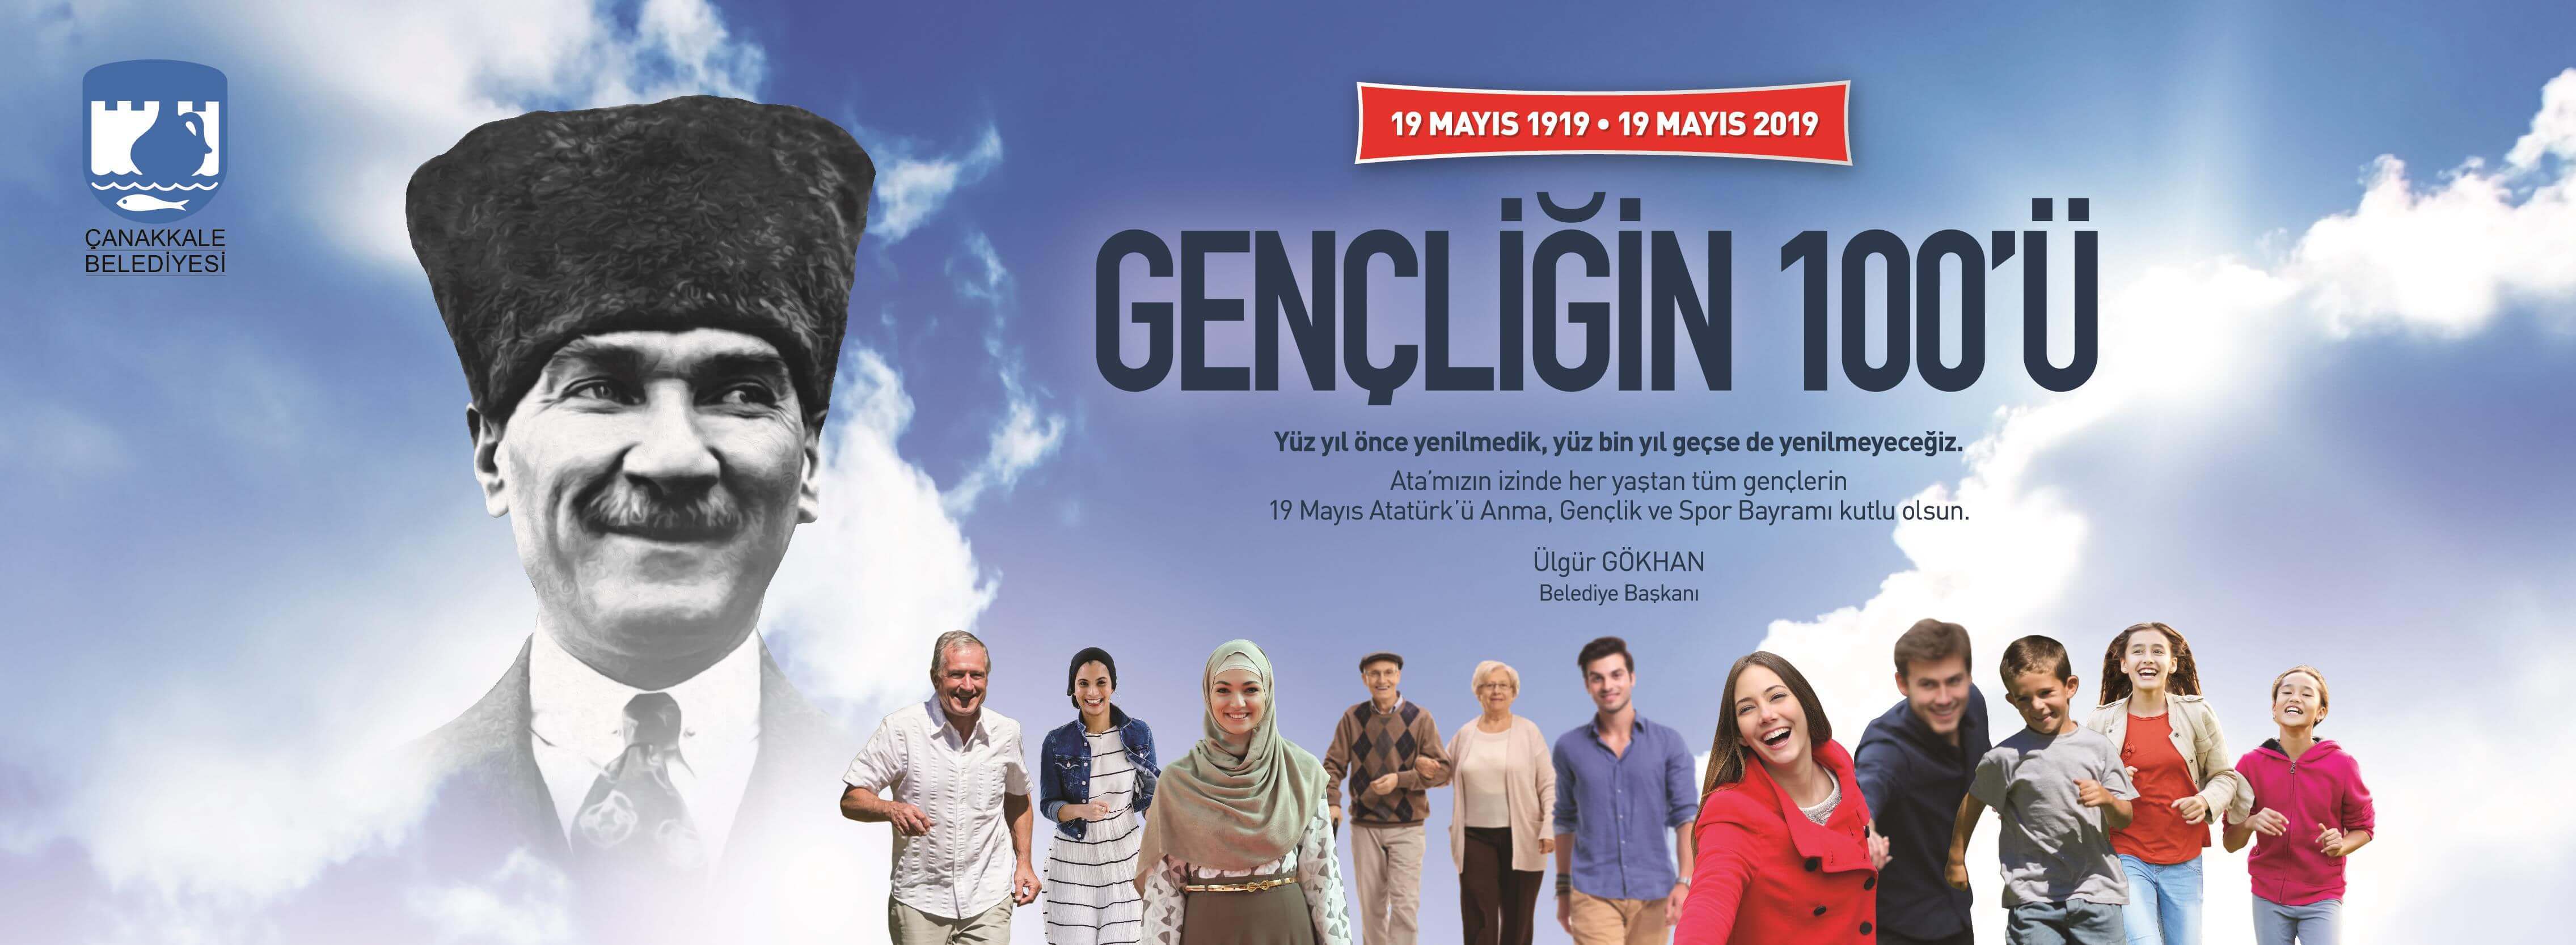 Belediye Başkanı Sayın Ülgür Gökhan'ın 19 Mayıs Atatürk'ü Anma, Gençlik ve Spor Bayramı Mesajı...